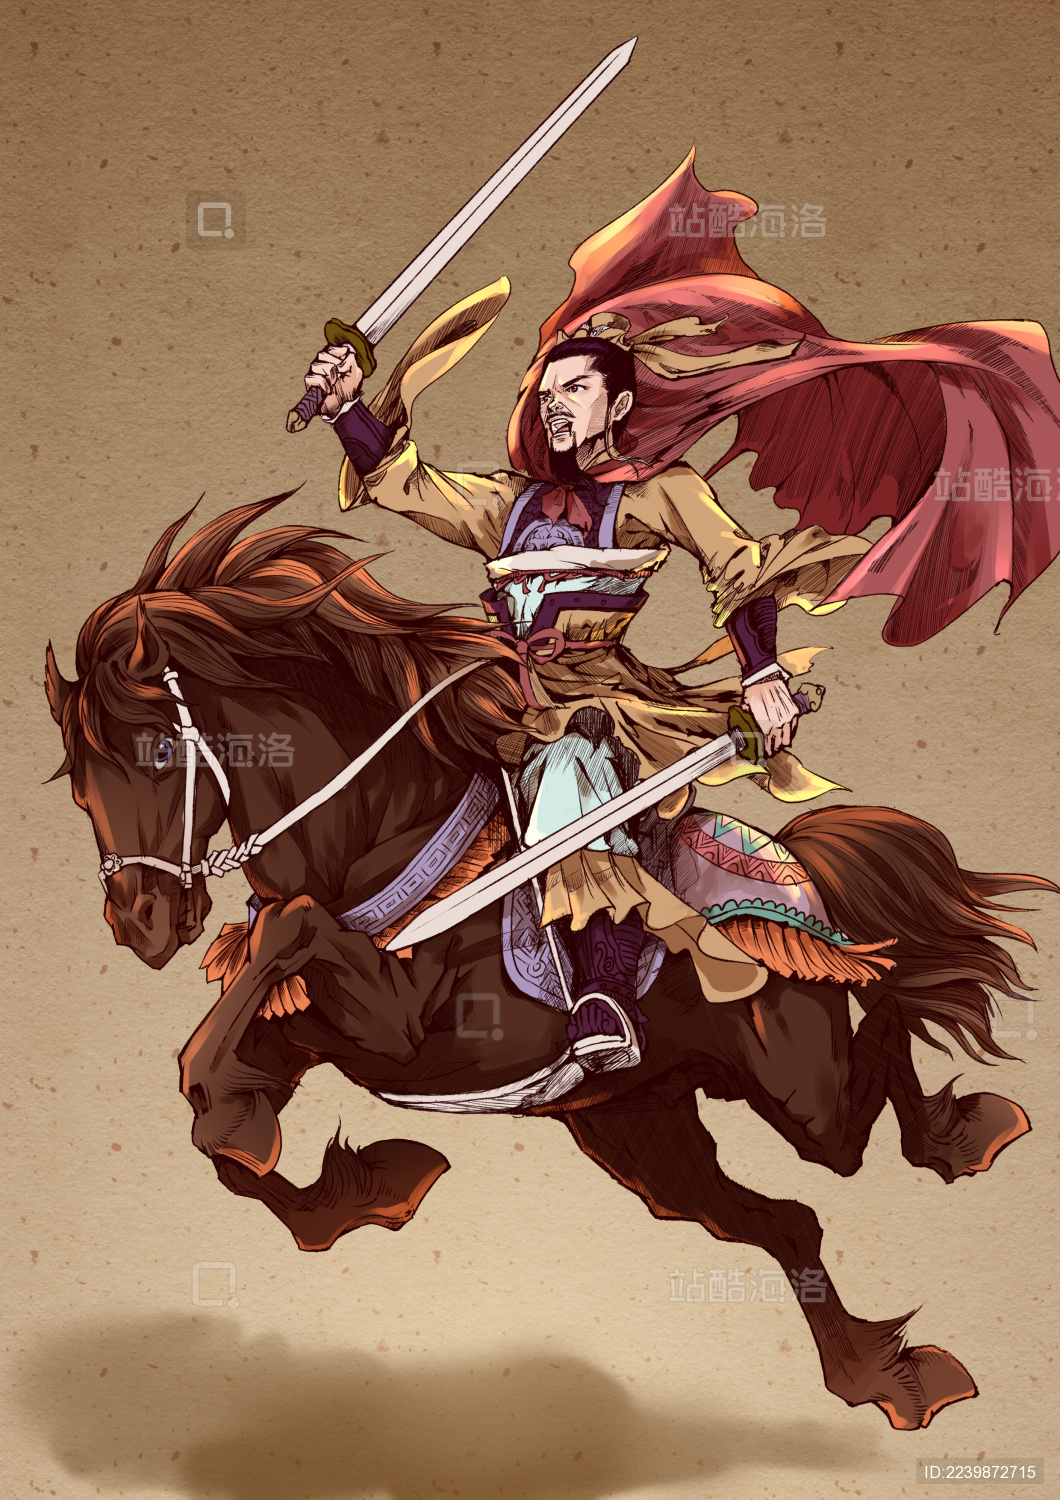 古代骑马的勇士 - 全部作品 - 素材集市